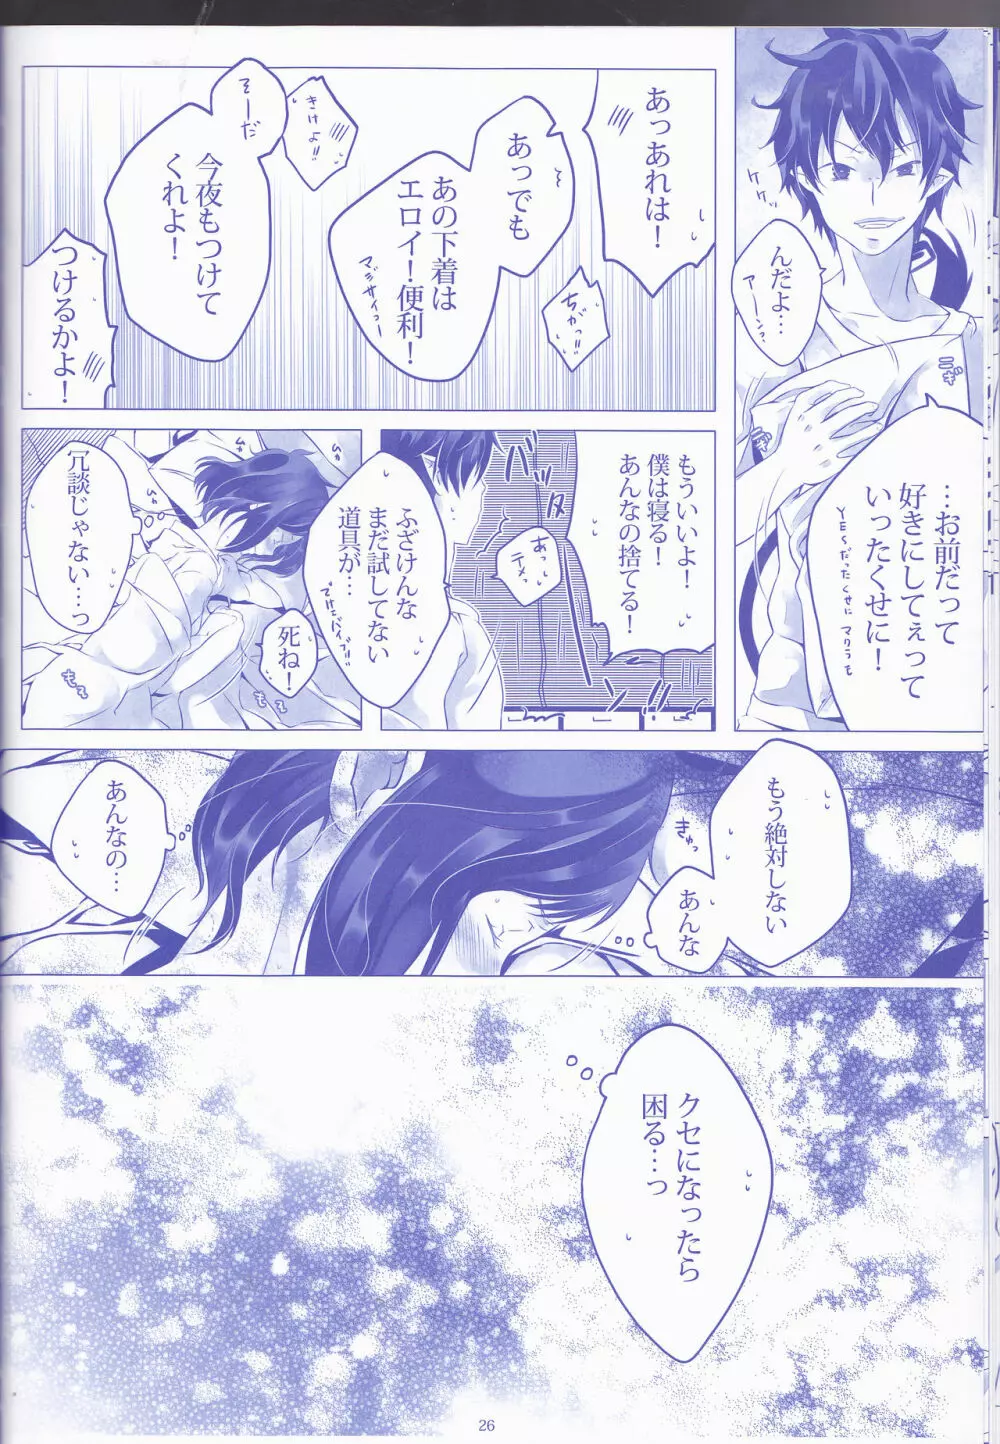 Toge hikari no navu~igātoria (blue exorcist] - page26